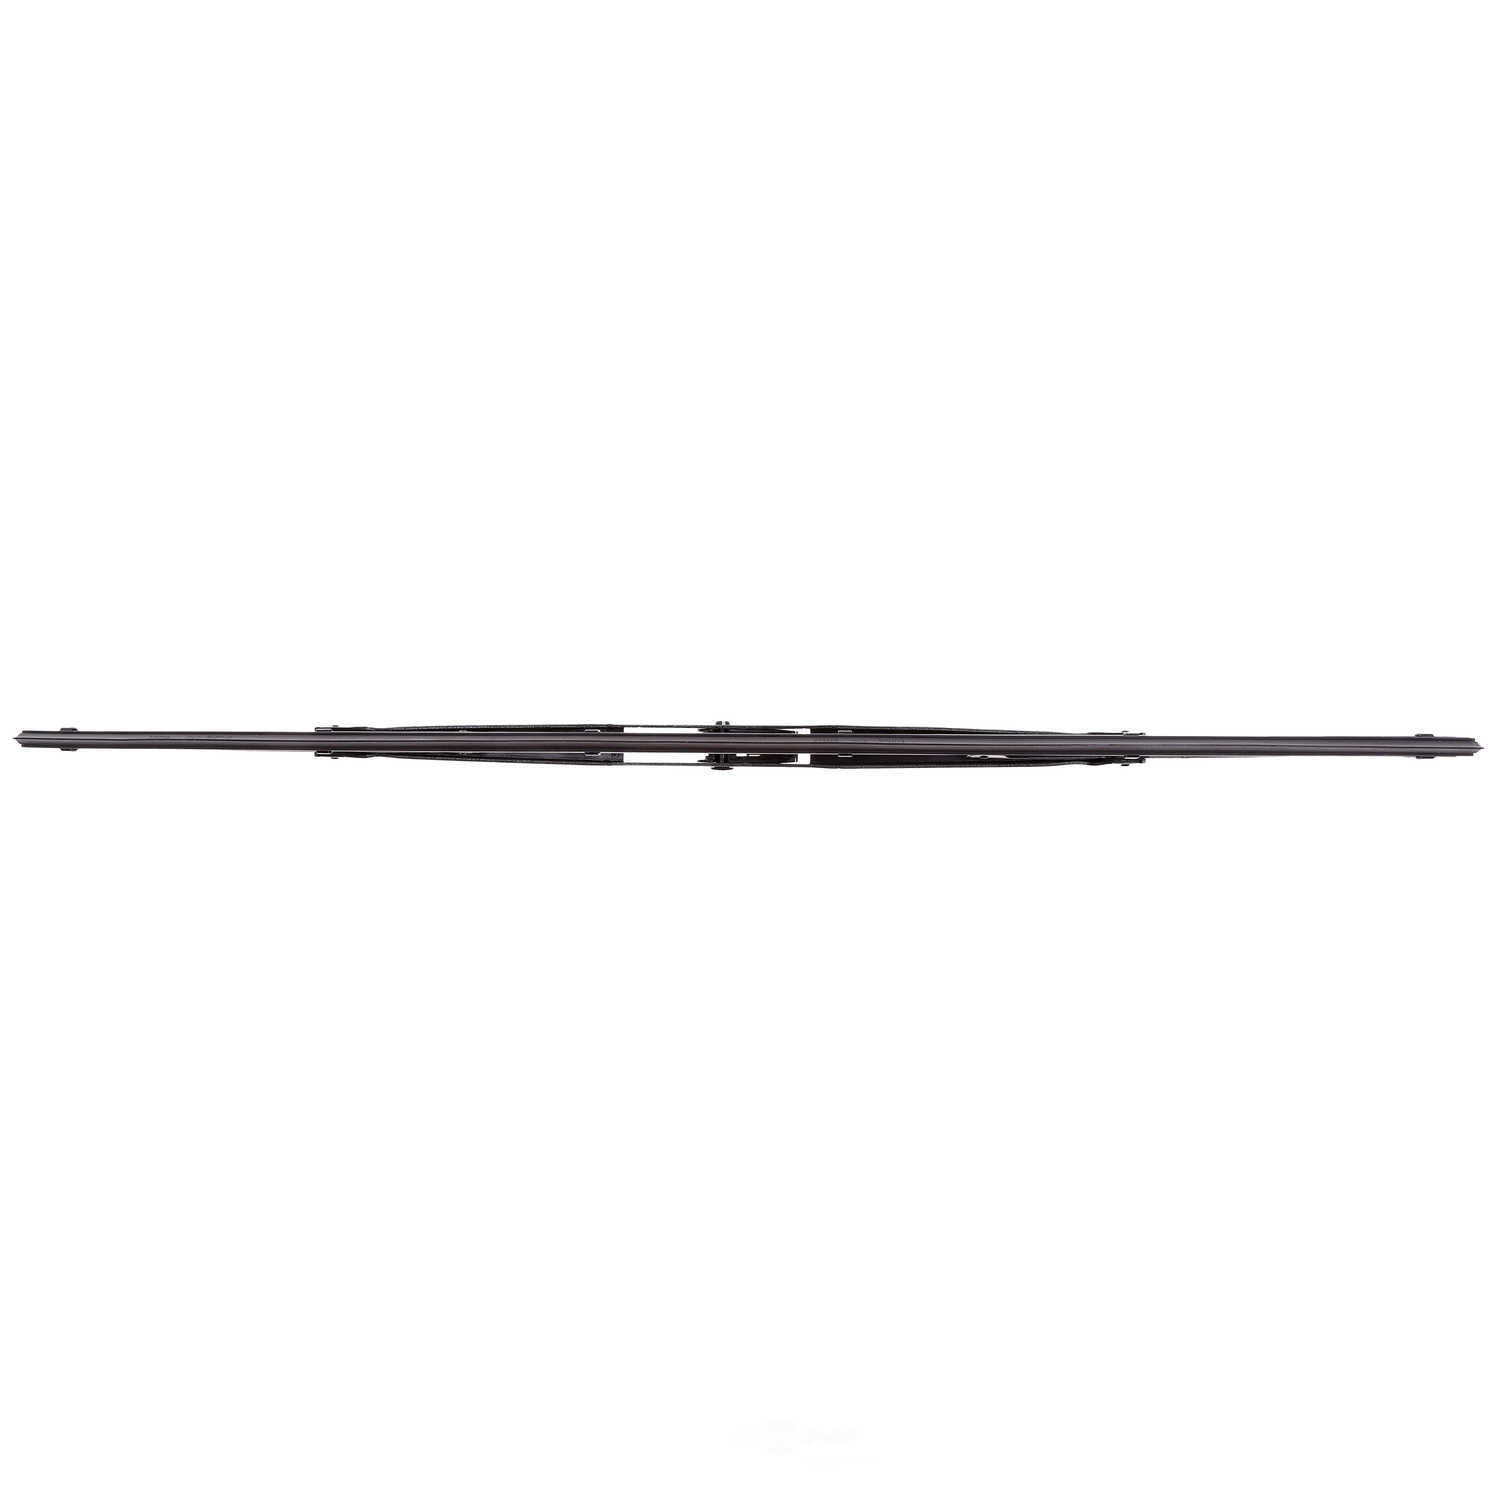 ANCO WIPER PRODUCTS - ANCO 97-Series Wiper Blade - ANC 97-18